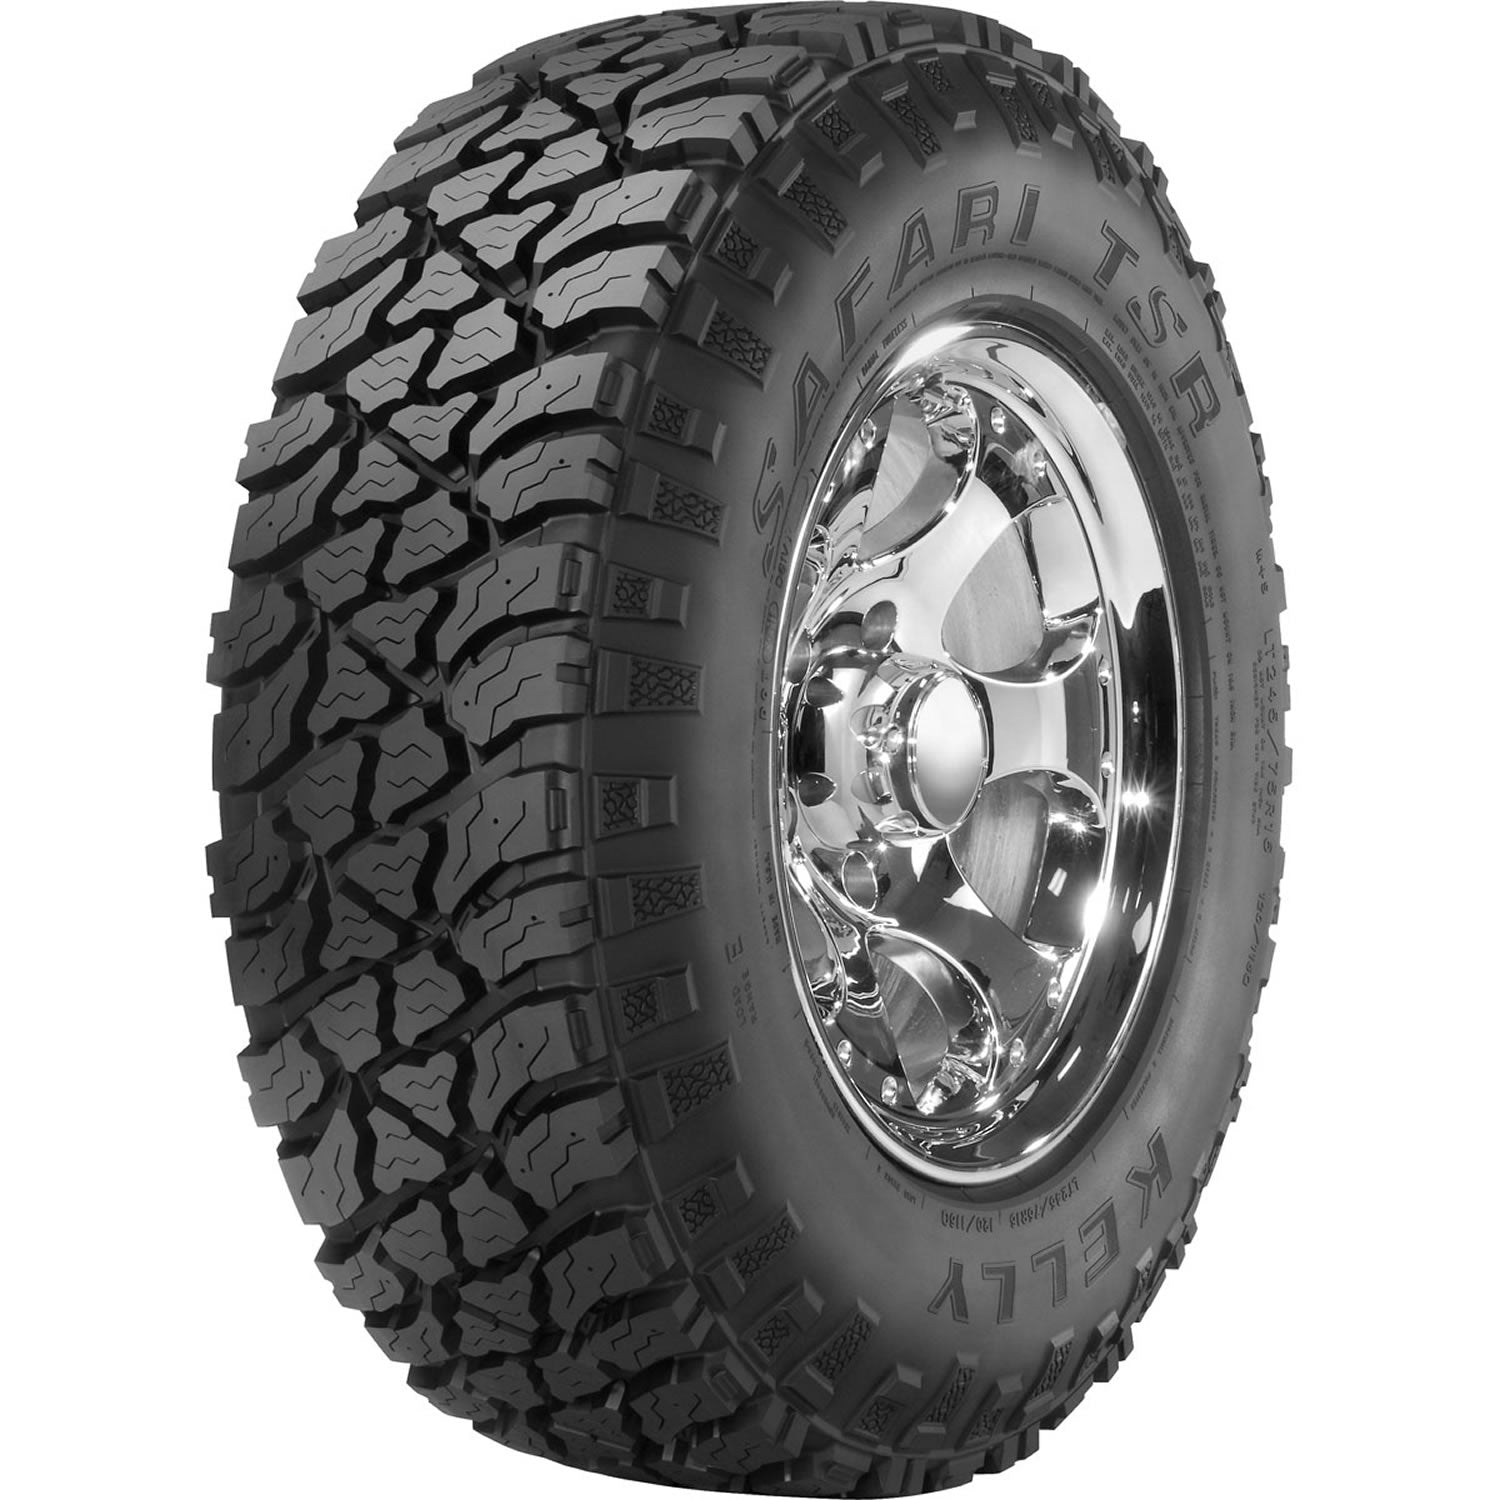 KELLY SAFARI TSR LT225/75R16 (29.3X8.8R 16) Tires